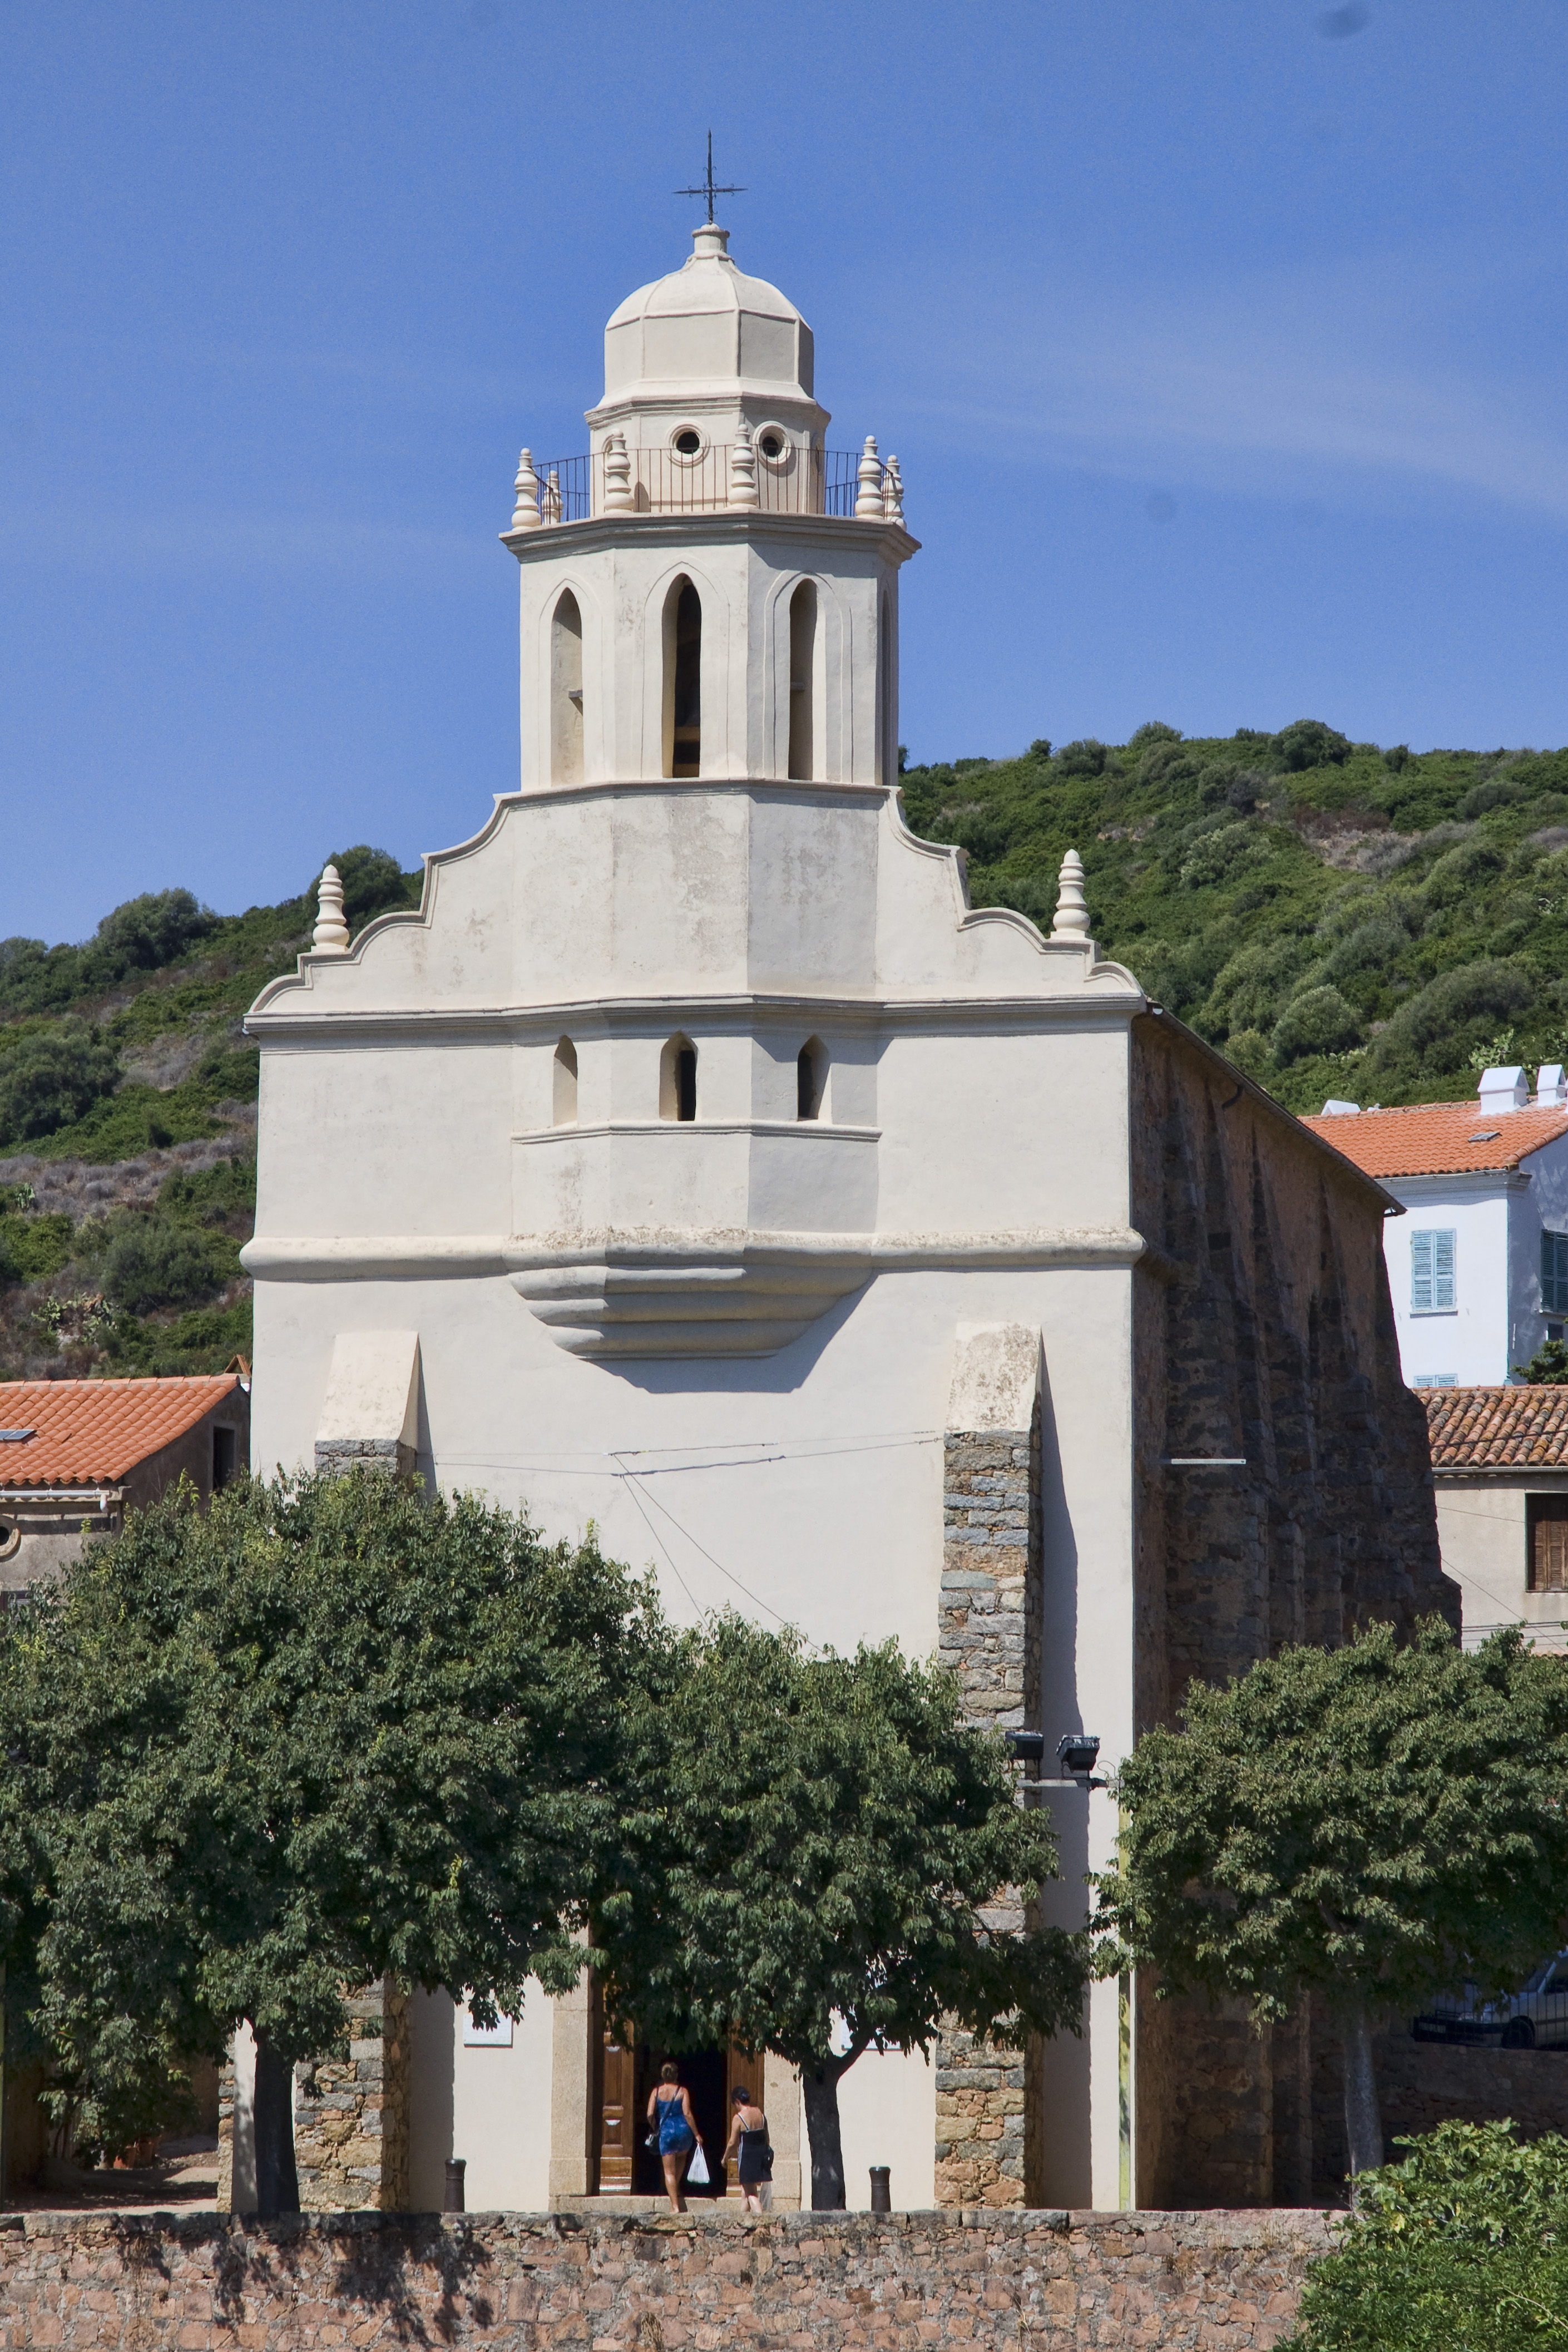 L'église grecque Saint-Spyridon de Carghjese souffre de problèmes d'étanchéité qui mettent en danger l'intégrité de ses boiseries et de sa façade.